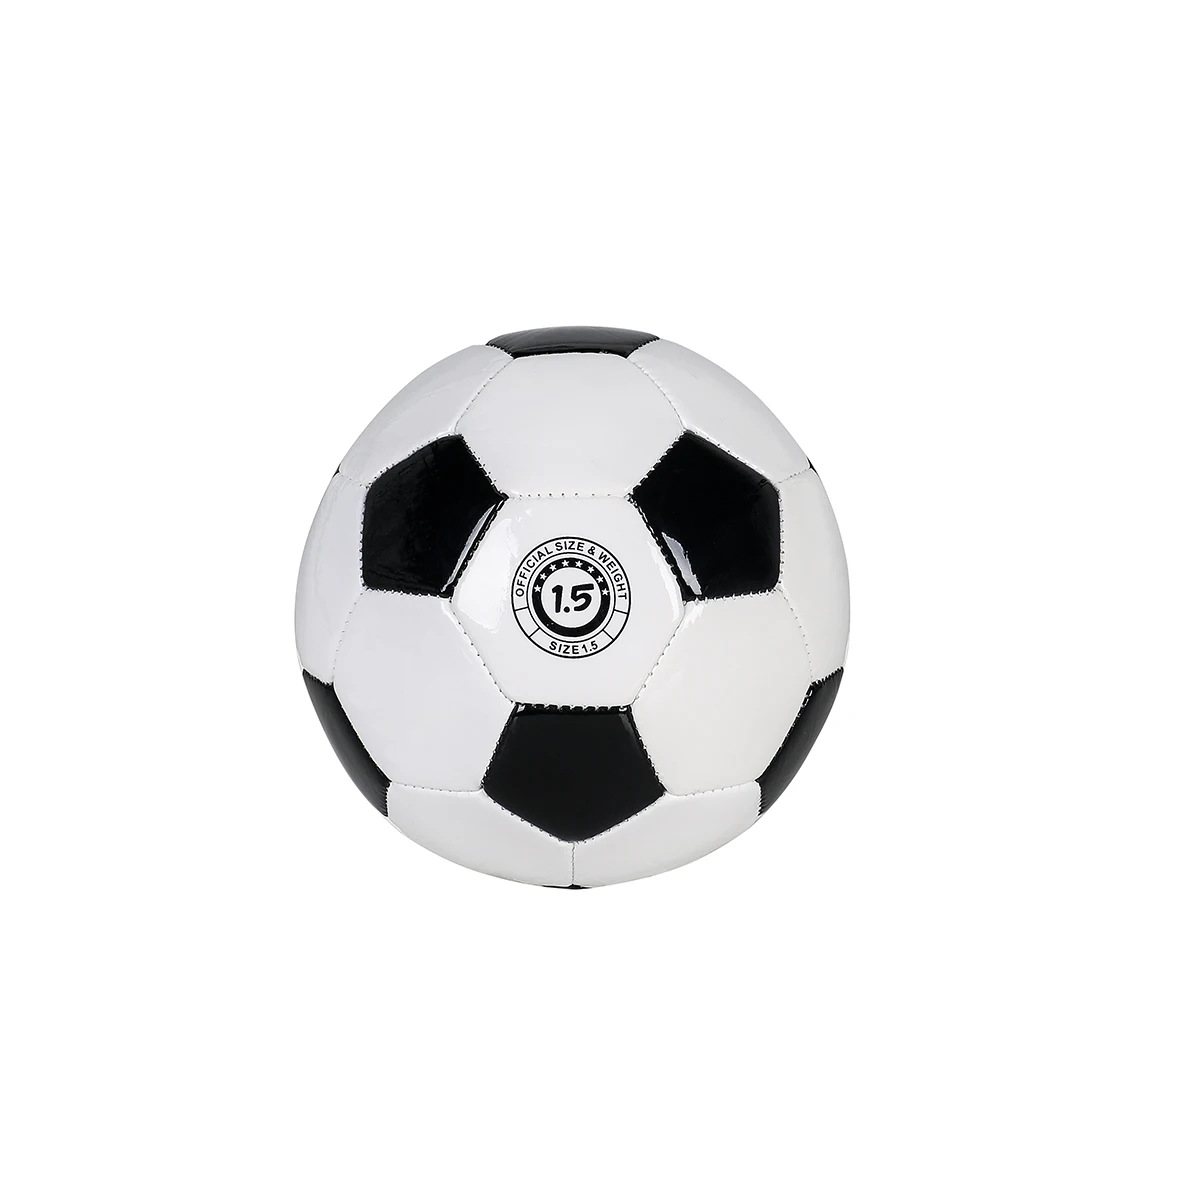 YANYODO Прочный " Мини Размер тренировочный футбольный мяч мягкая спортивная игрушка мяч для малышей, детский подарок, черный и белый